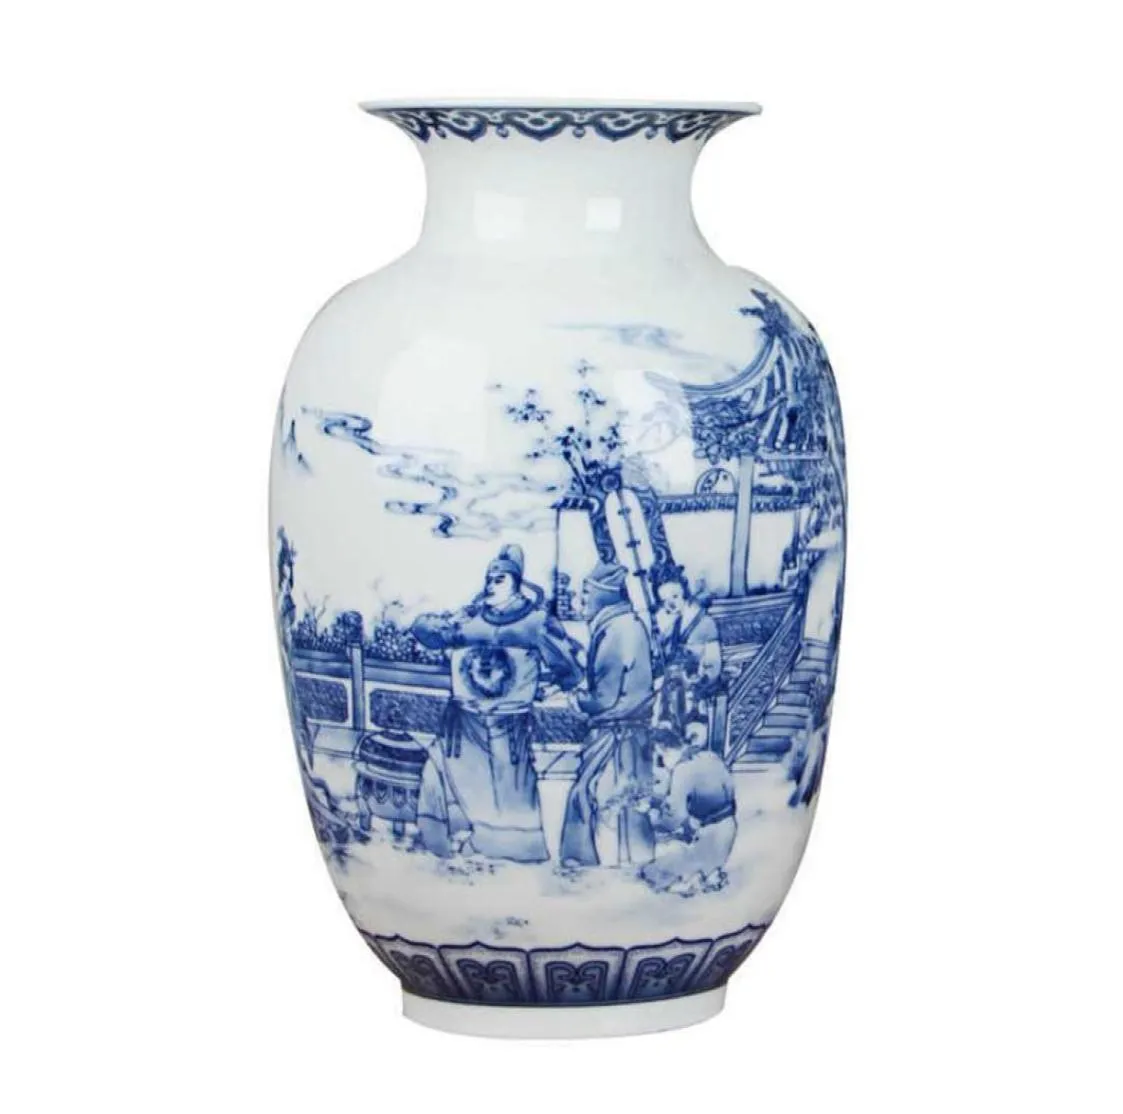 Klassisk kinesisk blå och vit keramisk vas Antik bordsskiva porslinblomma vas för elmatsal dekoration 210623232U6259954